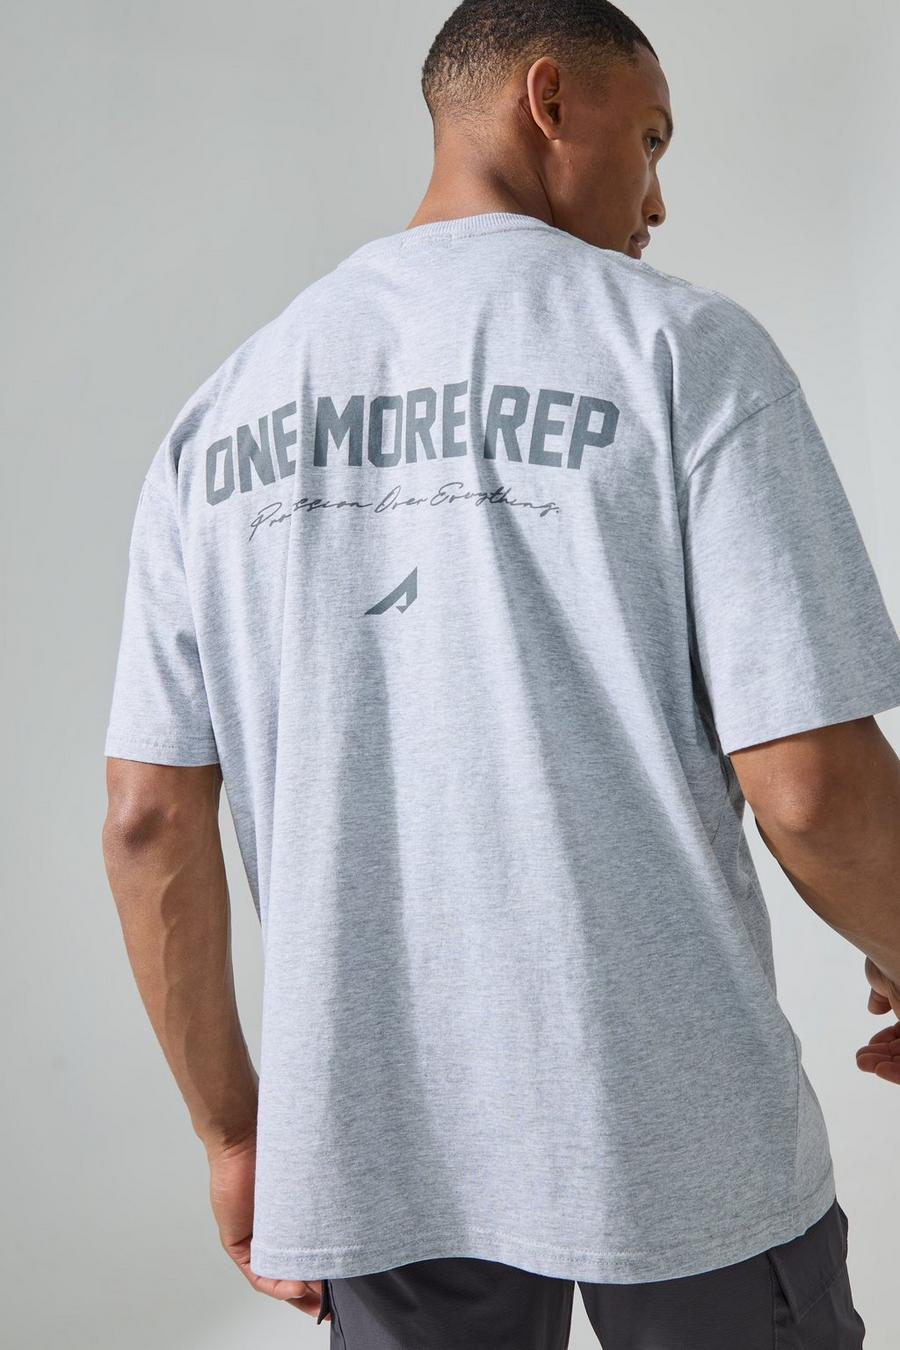 Camiseta MAN Active oversize con estampado One More Rep, Grey marl